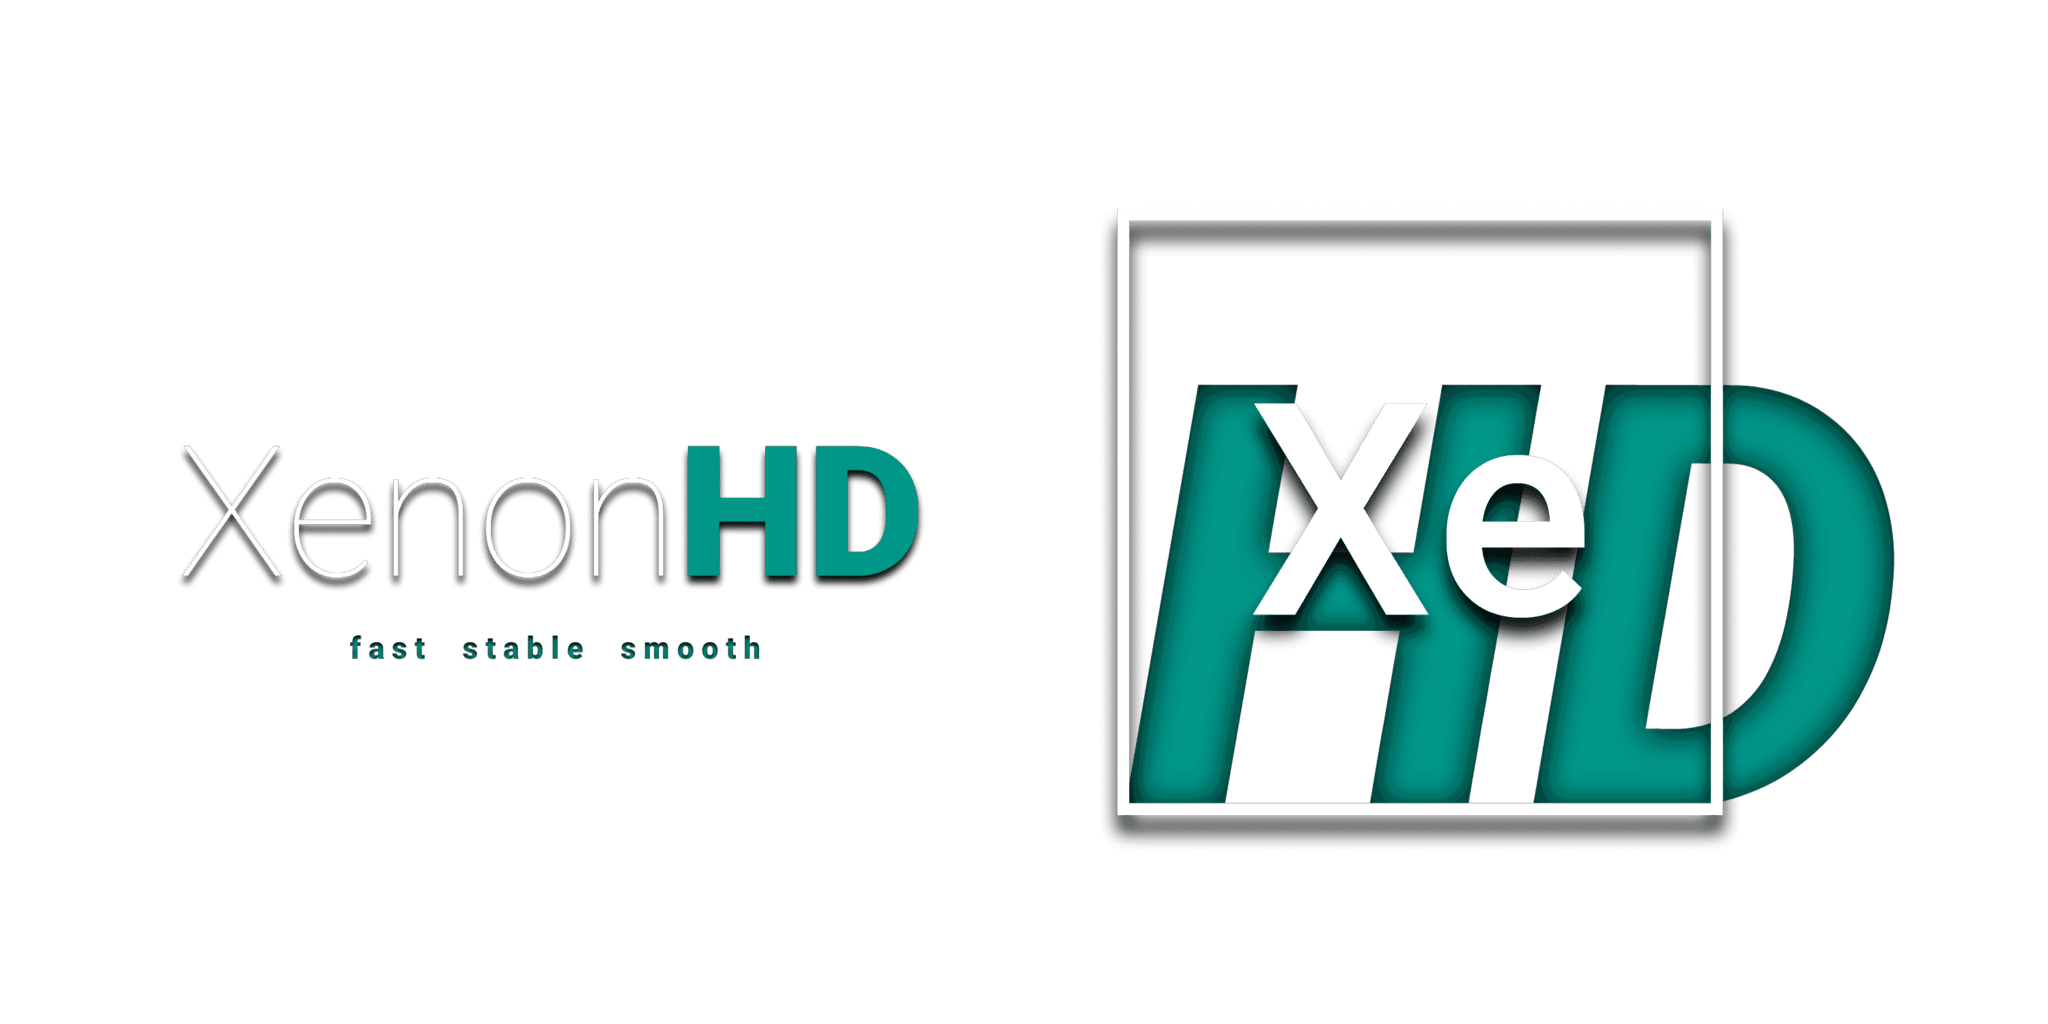 XenonHD